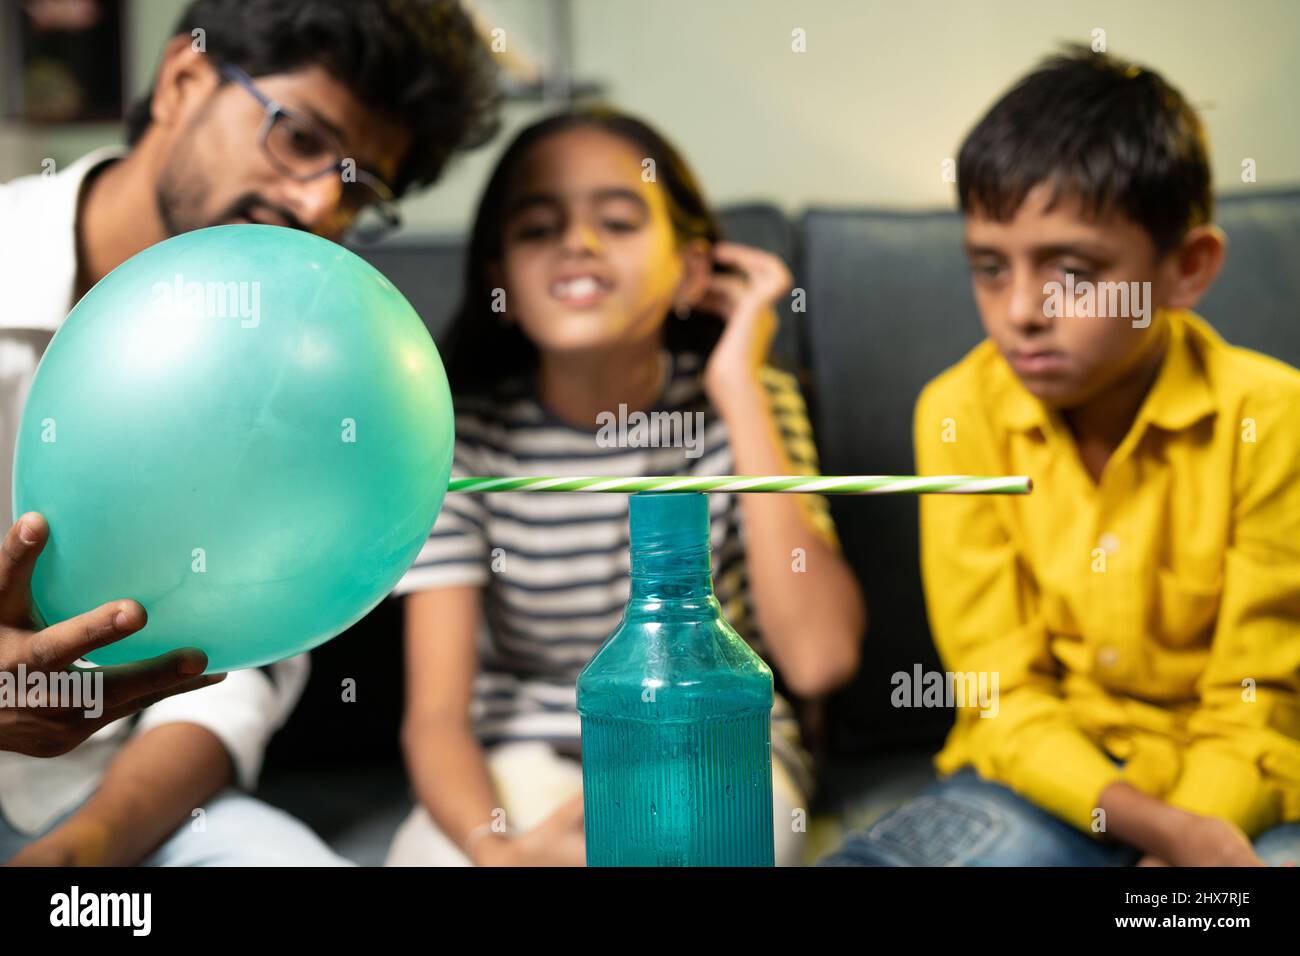 Kinder zu Hause in aufgeregt beobachten satte Klammern oder statische elektrische Wissenschaft Experiment zu Hause, indem sie zeigen Bleistift anzieht, um Ballon - Konzept der Stockfoto